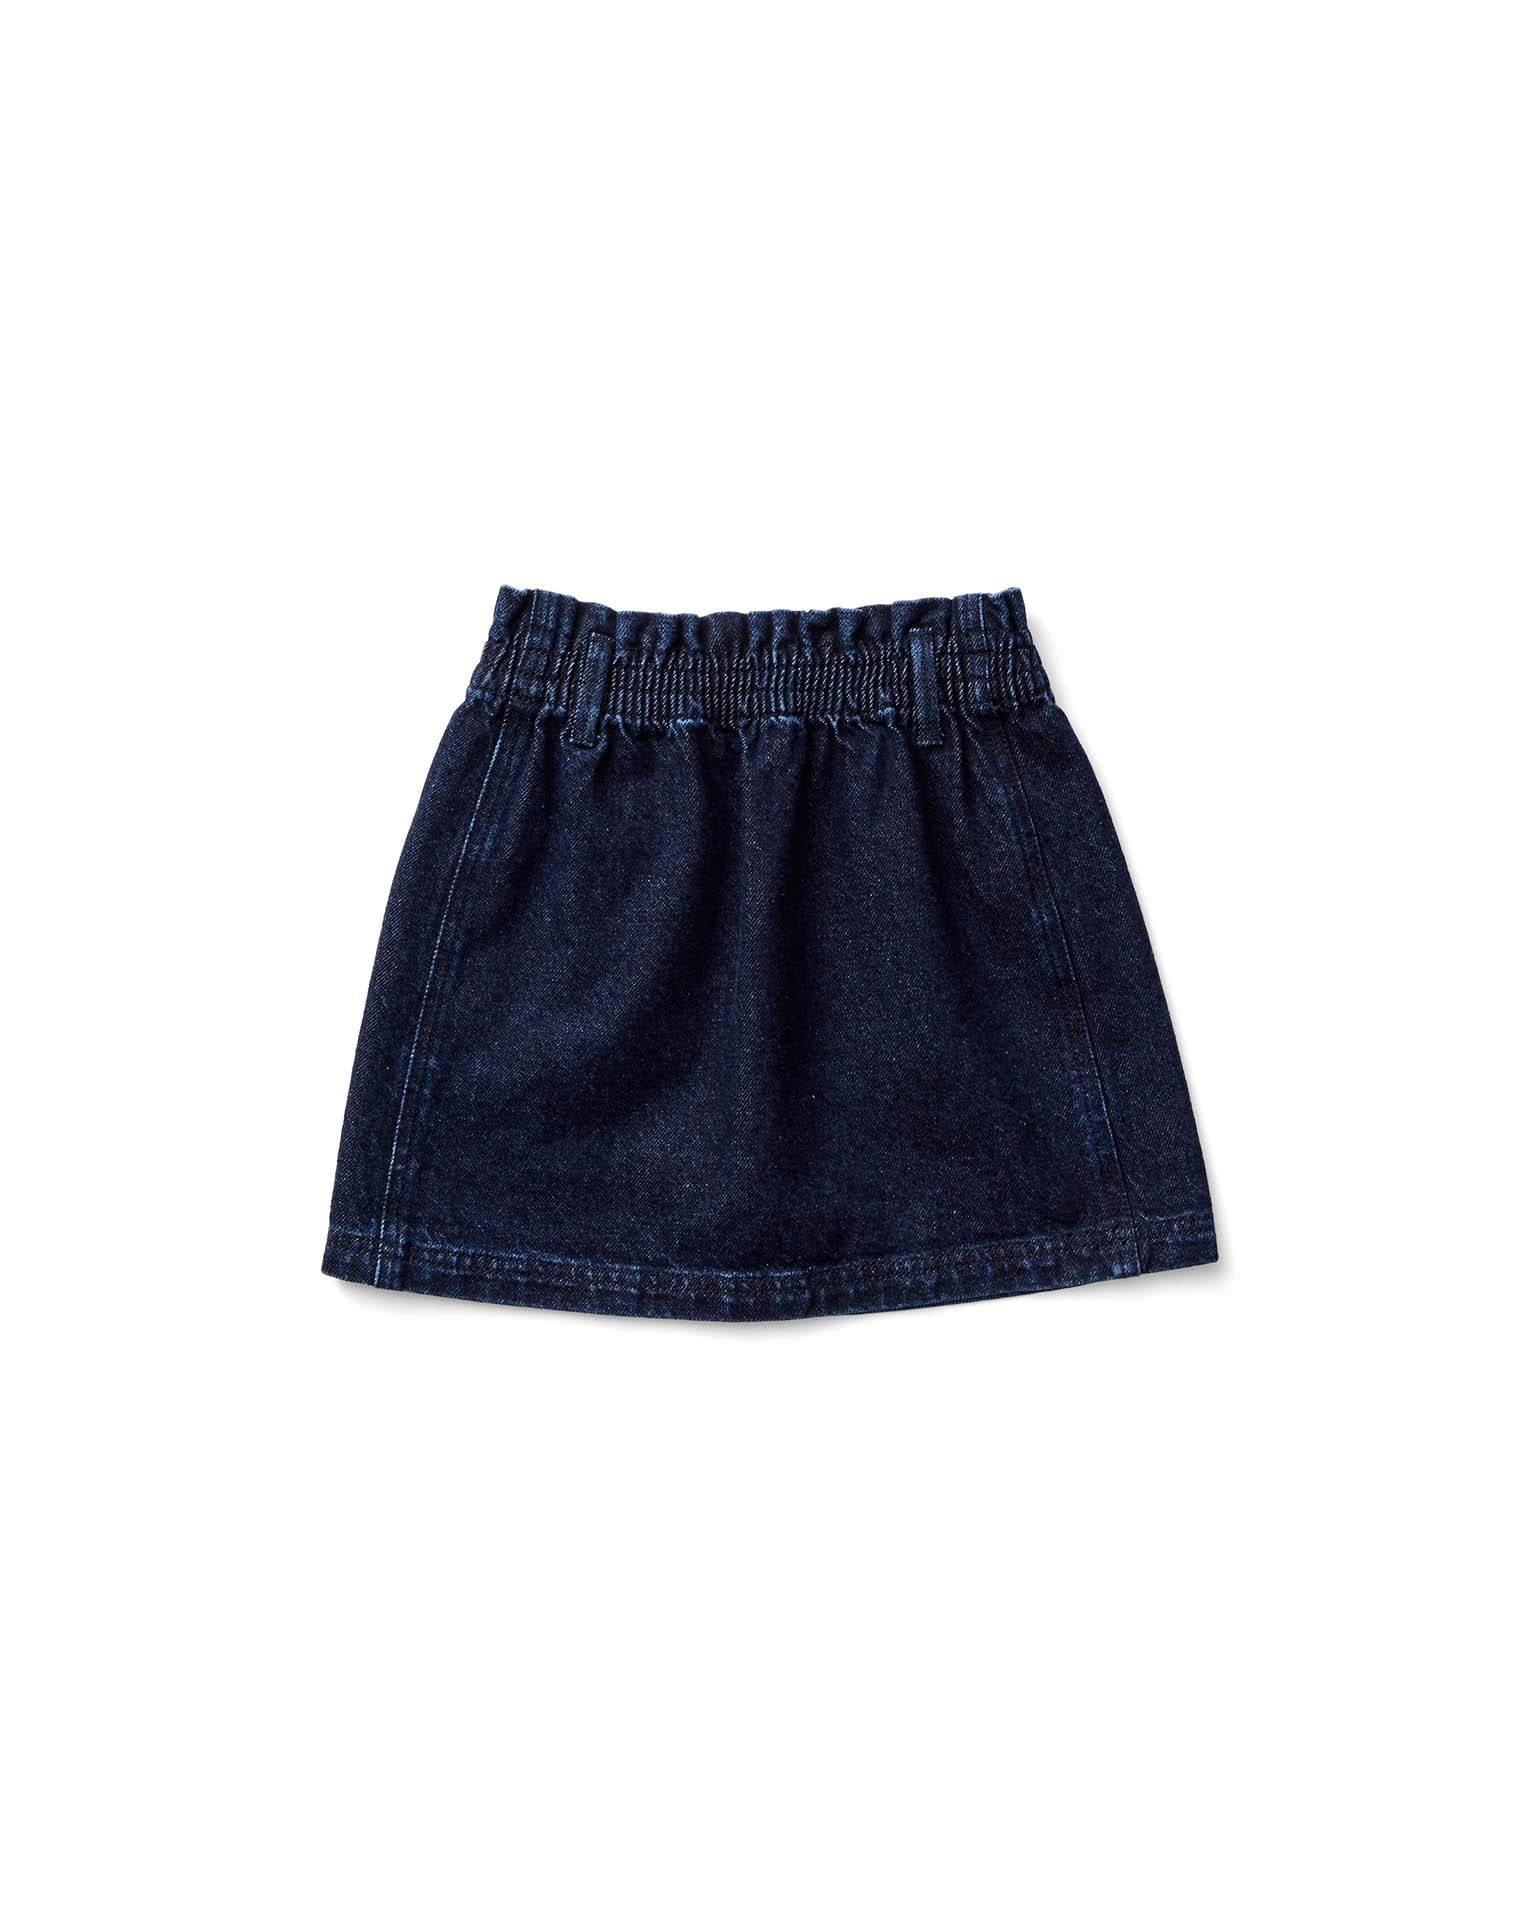 filipa skirt in dark denim by soor ploom | kids at Little